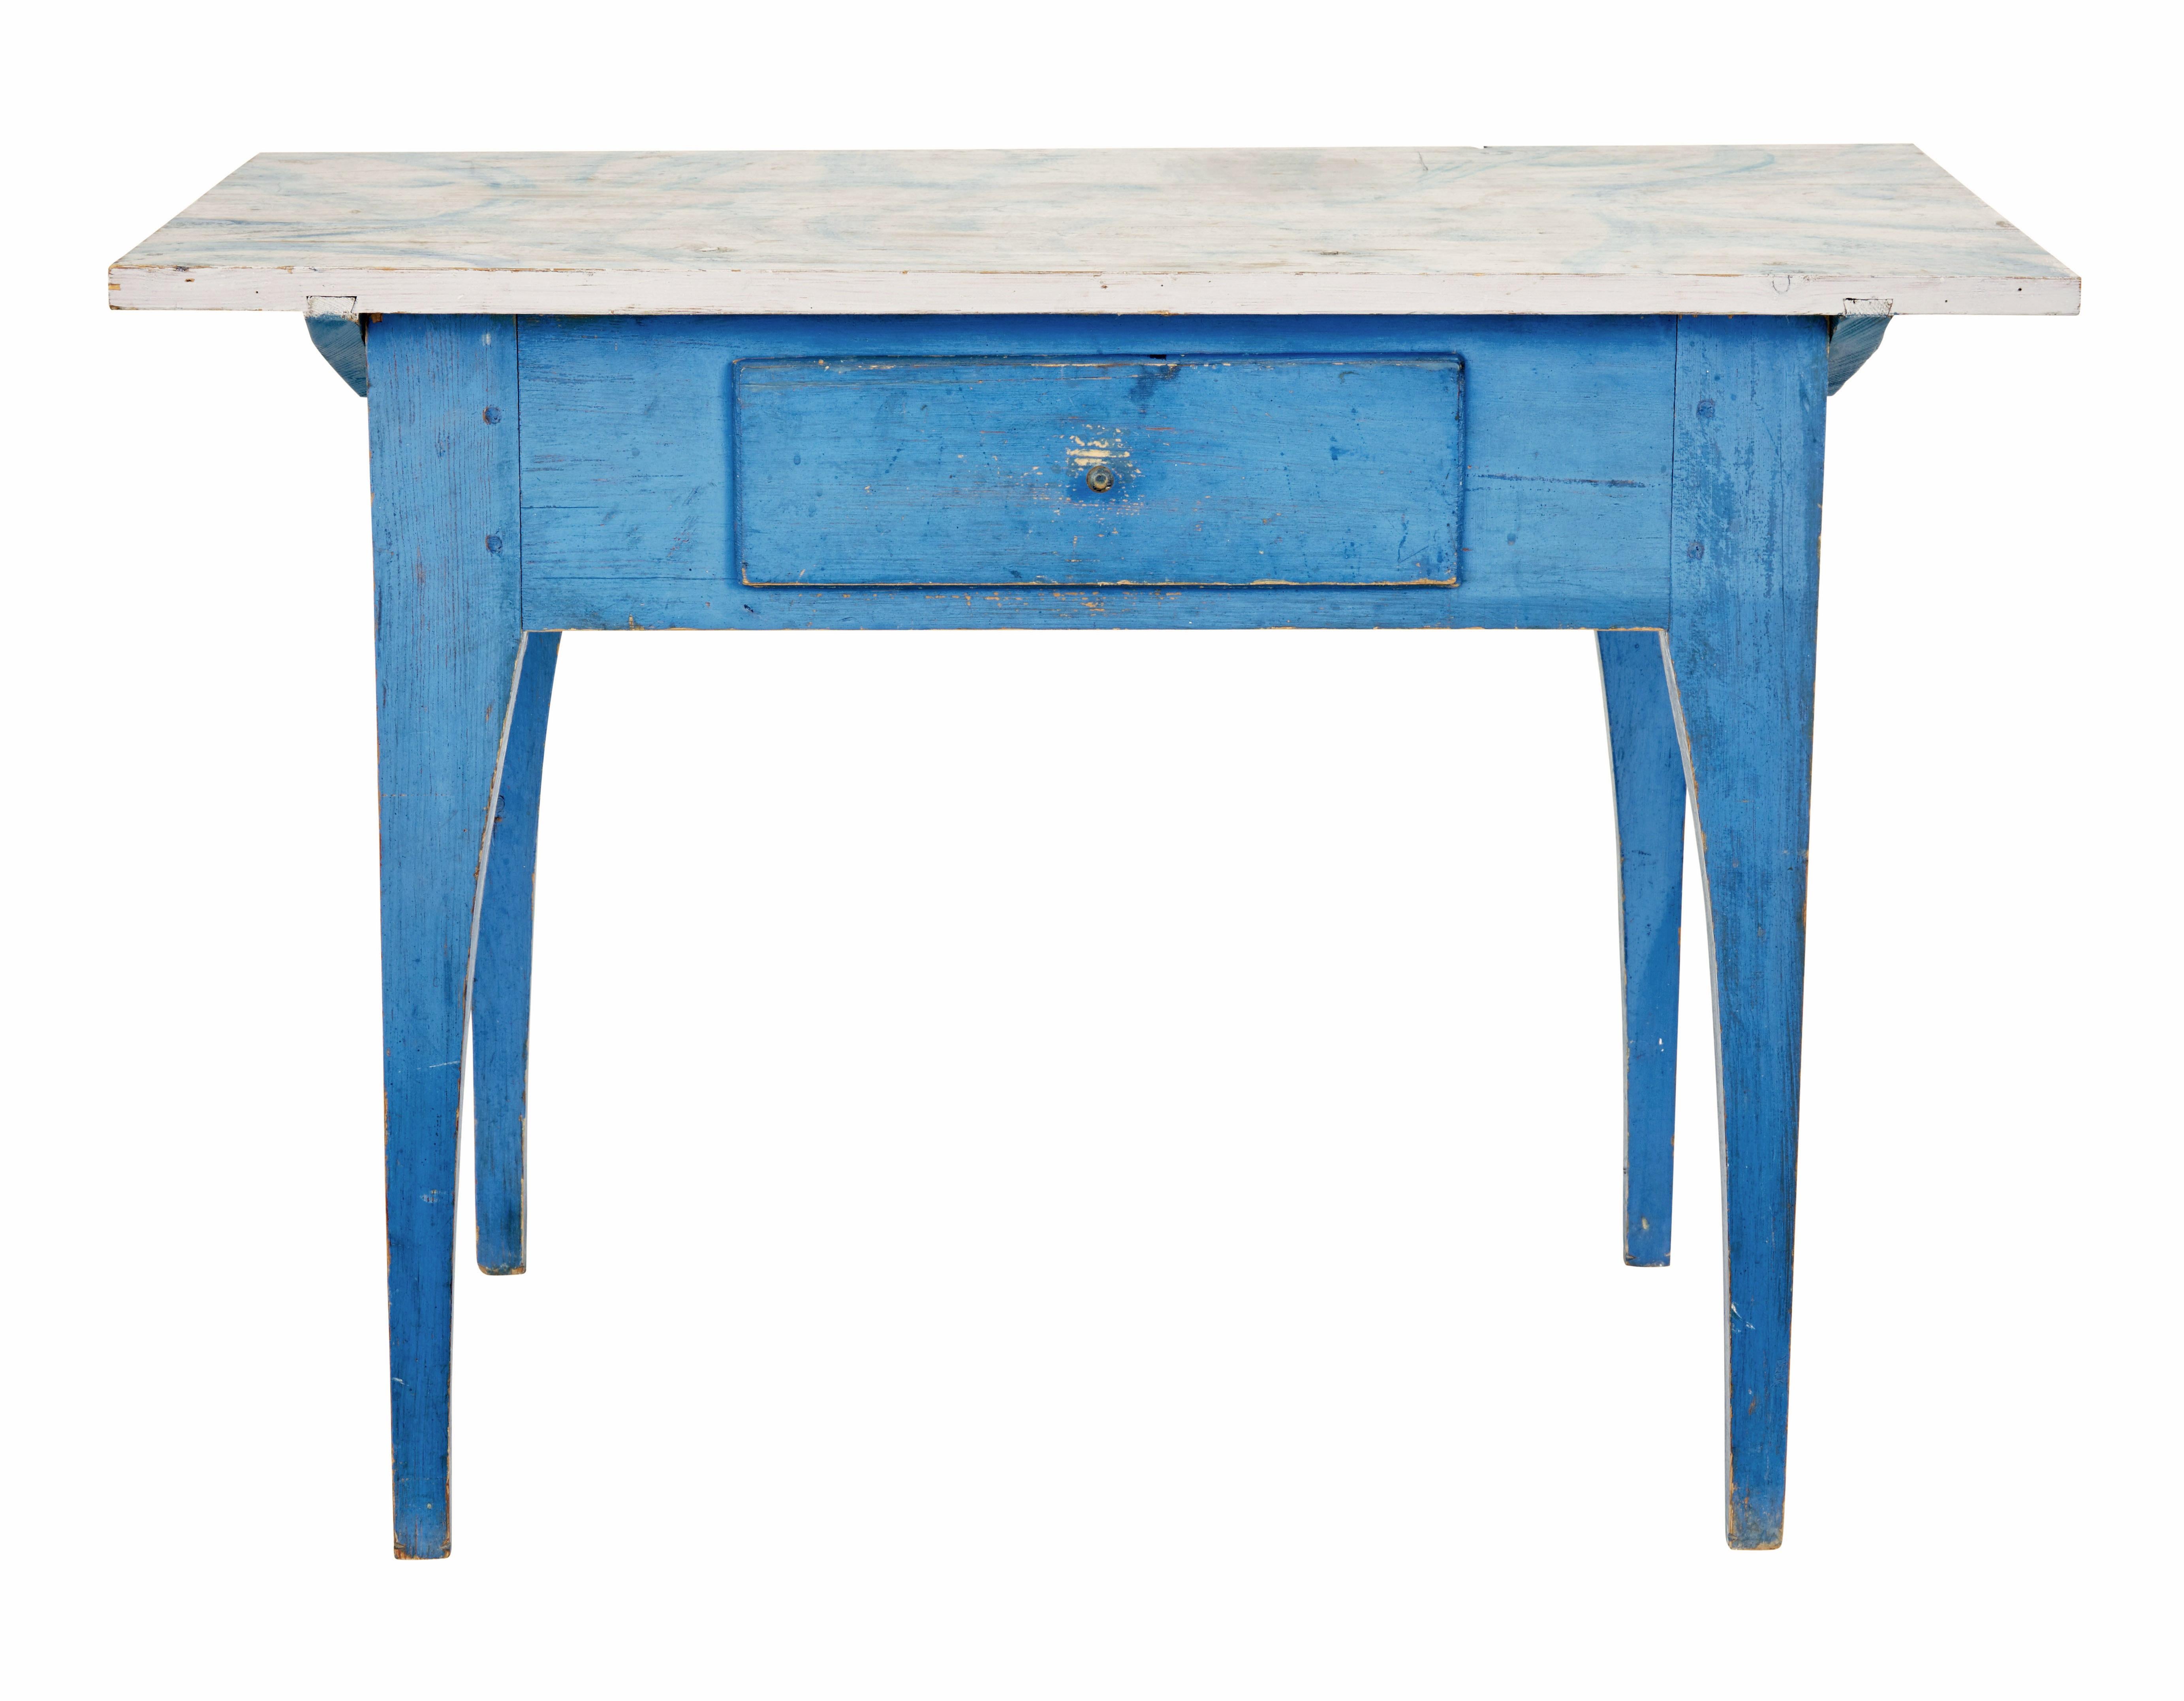 Wir bieten hier ein funktionelles schwedisches Möbelstück aus dem 19. Jahrhundert um 1890 an.

Mehrzweck-Tisch, der als Beistelltisch, Beistelltisch oder Küchentisch dienen kann.

Traditionell handbemalte Oberfläche in Grau und Blau mit naivem